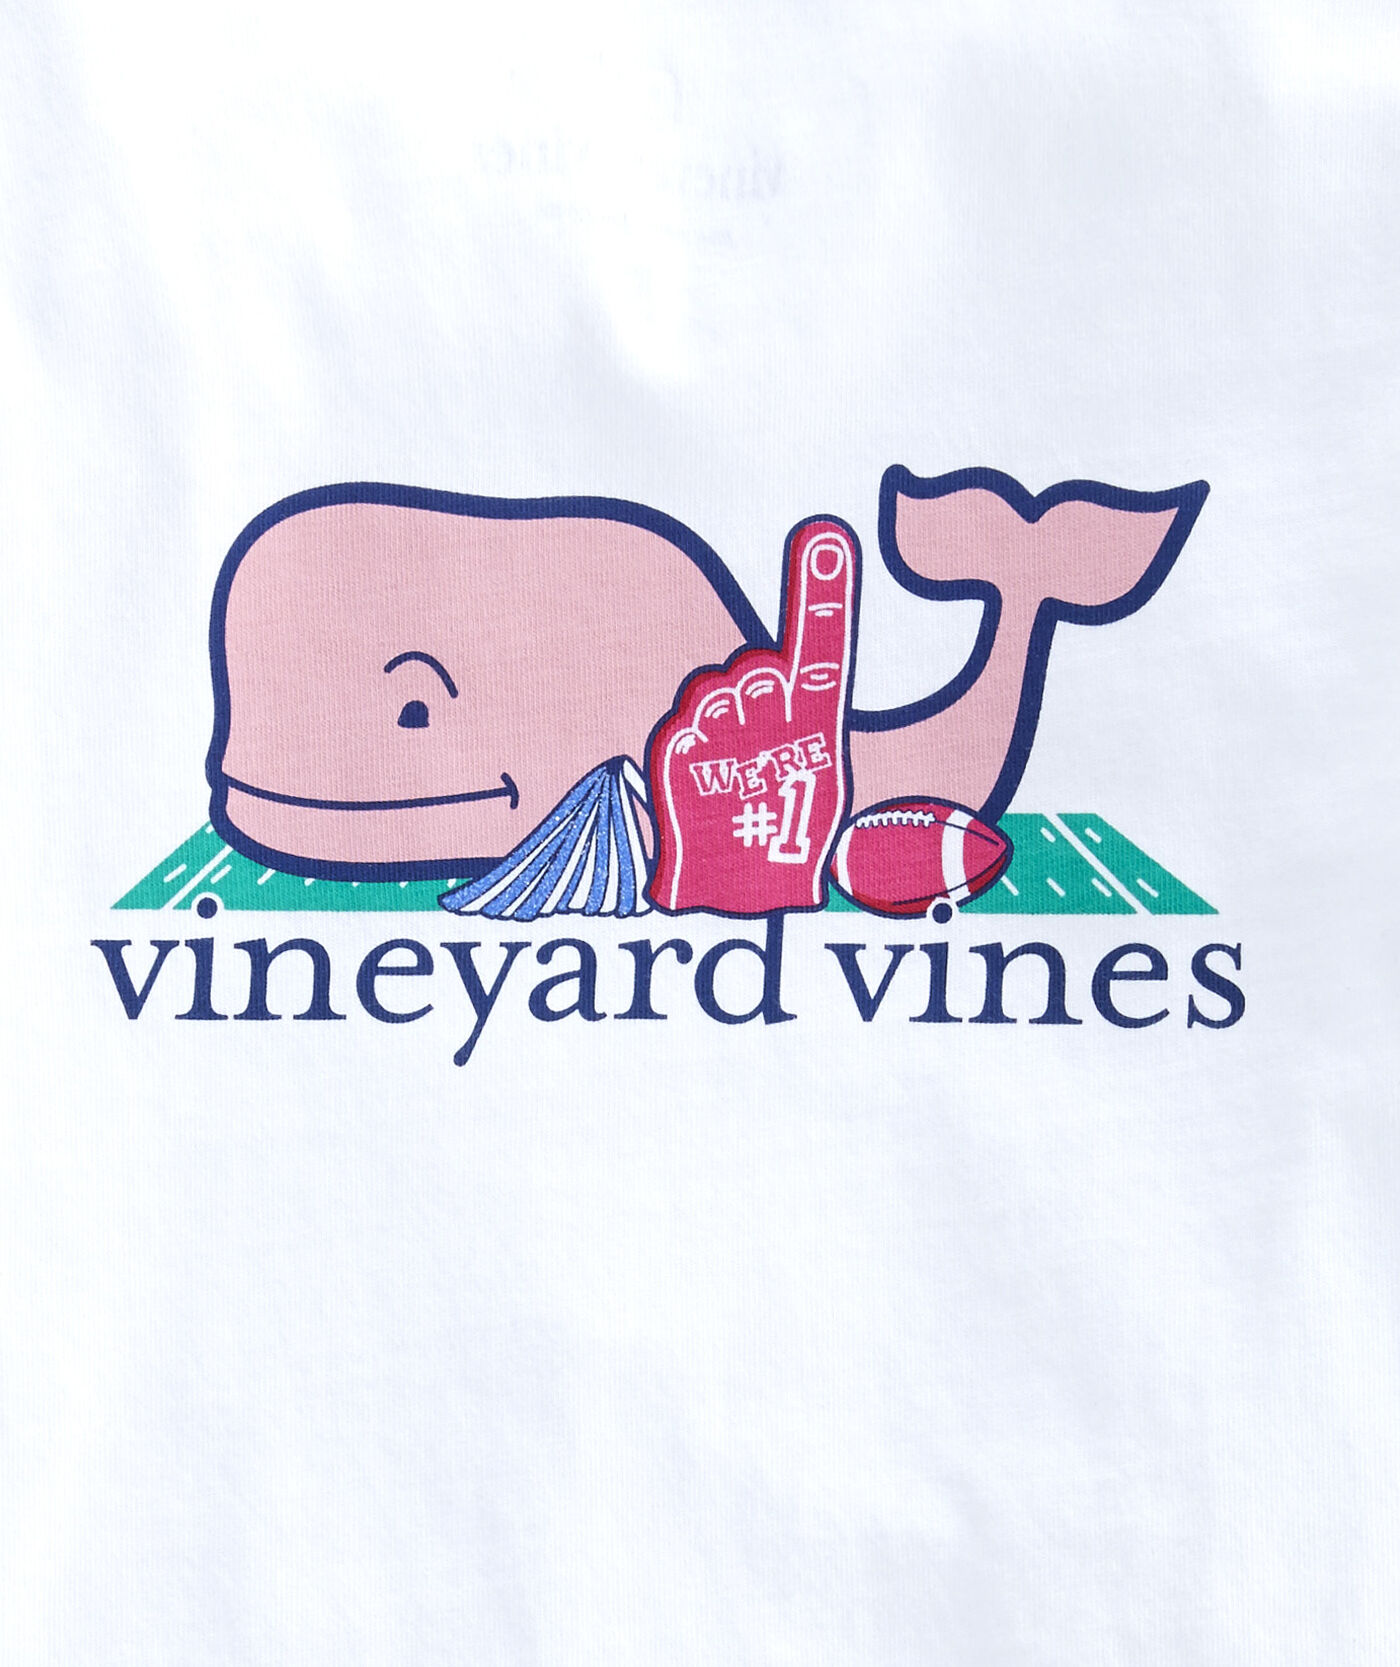 Sites-Vineyard-Vines-Site